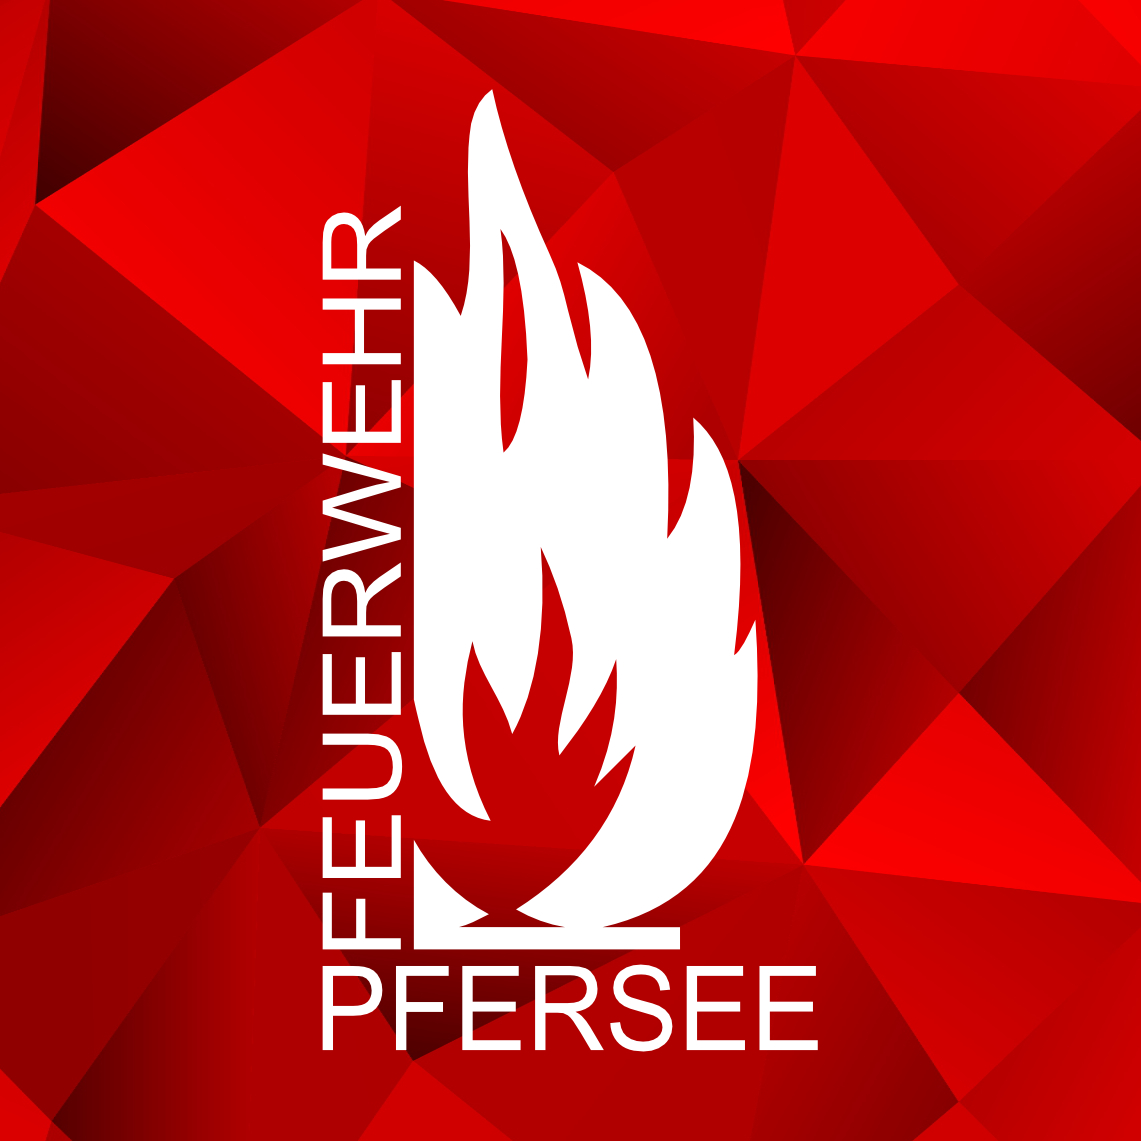 (c) Feuerwehr-pfersee.de